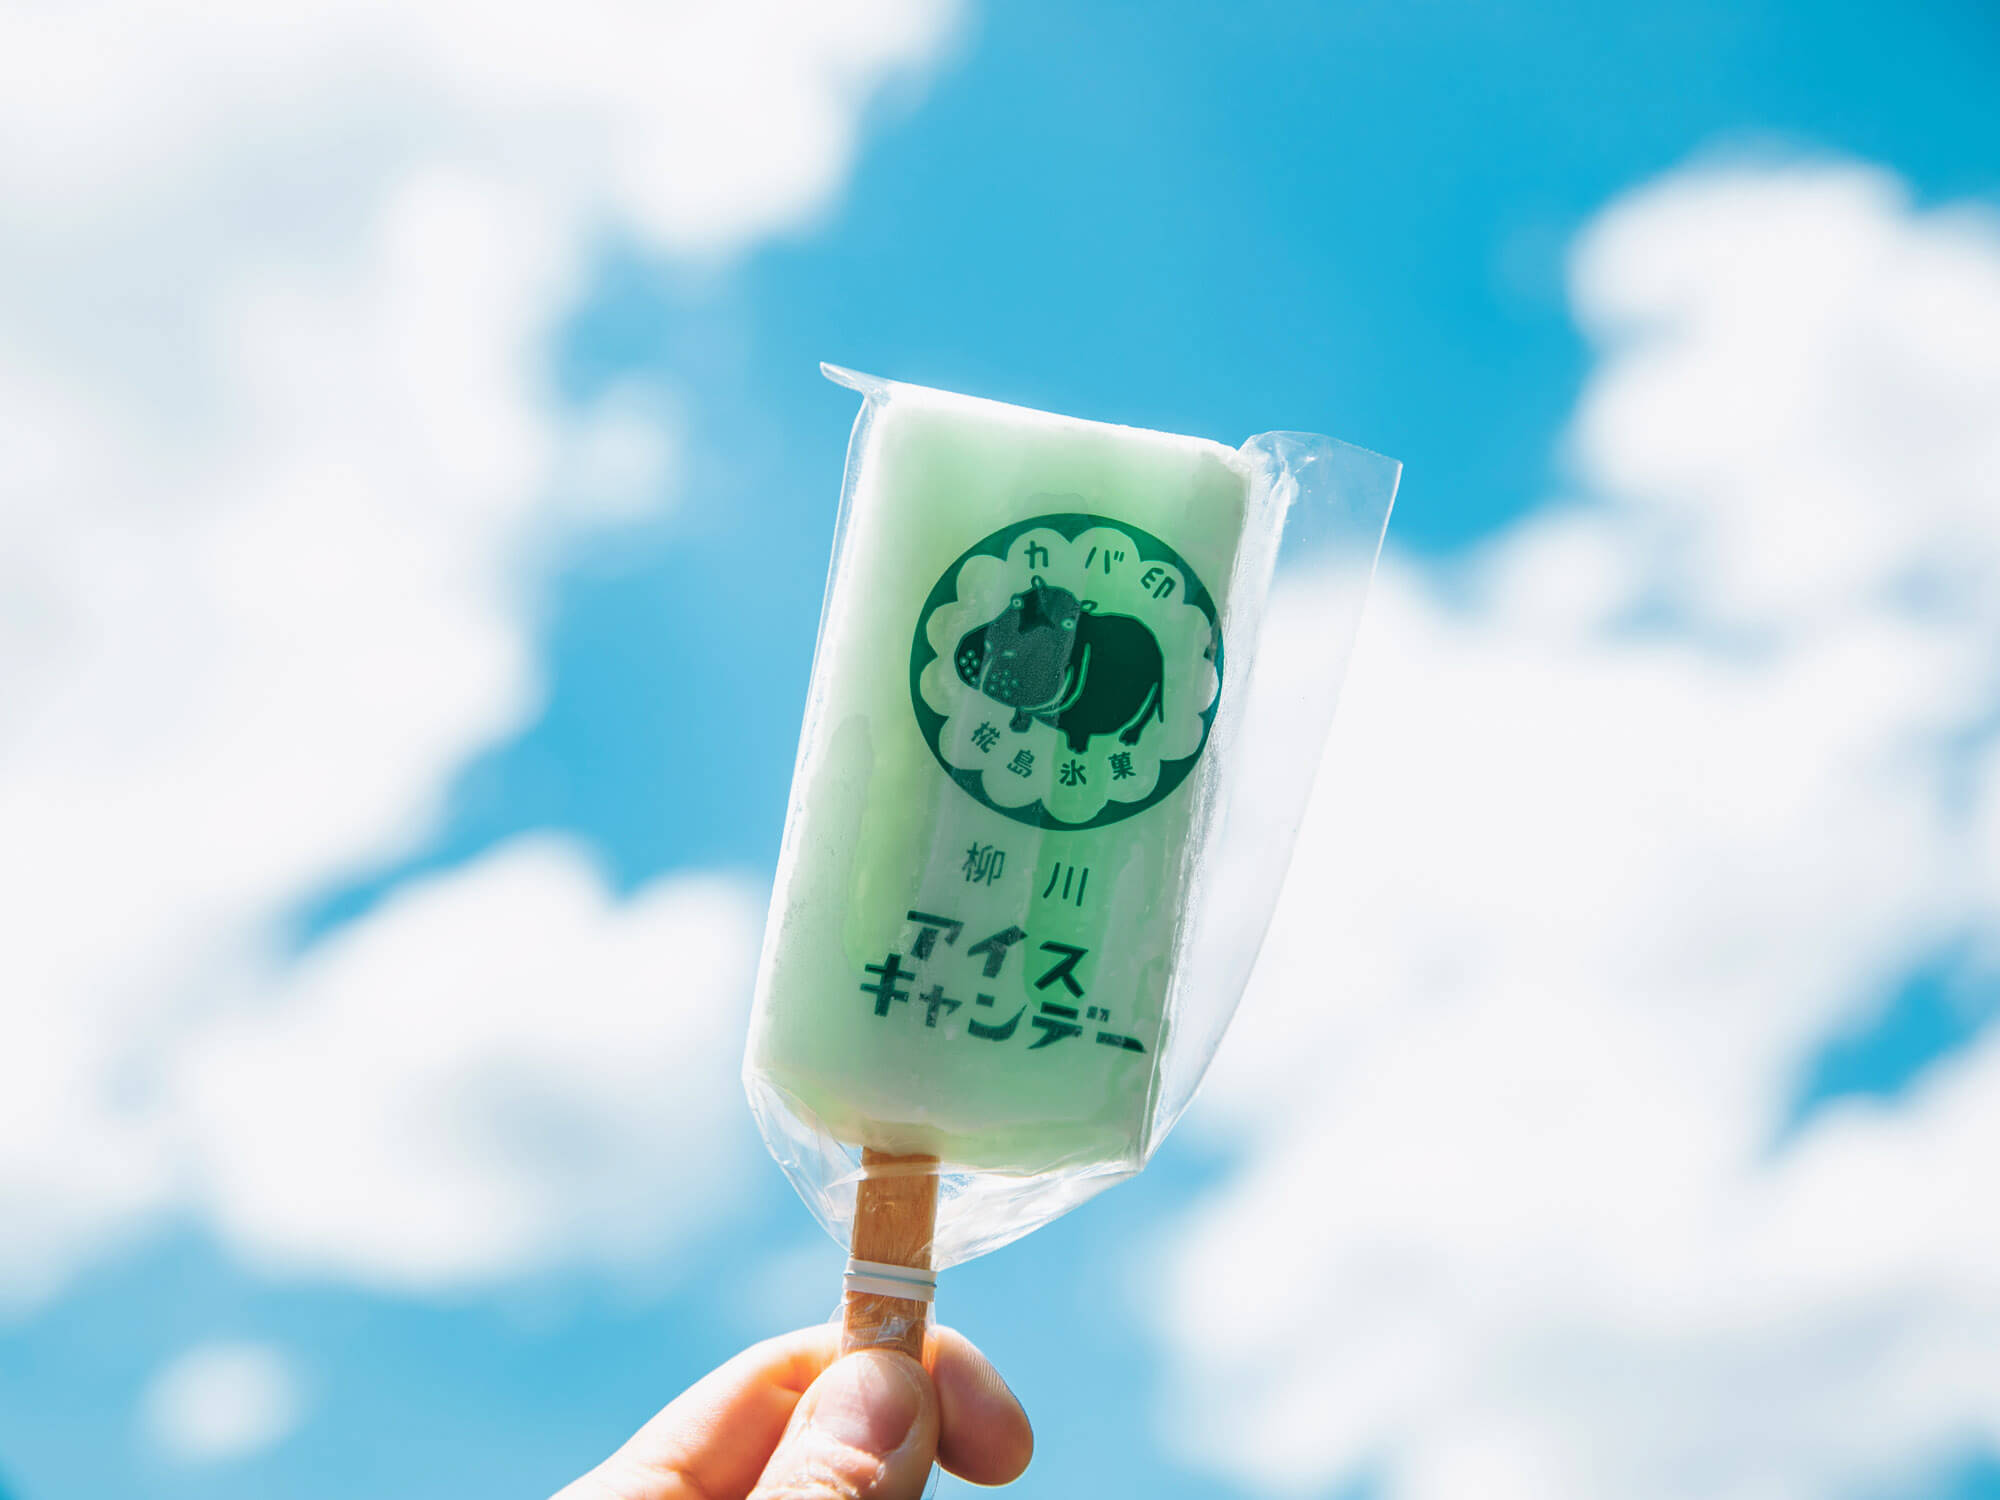 椛島氷菓のアイスキャンデー